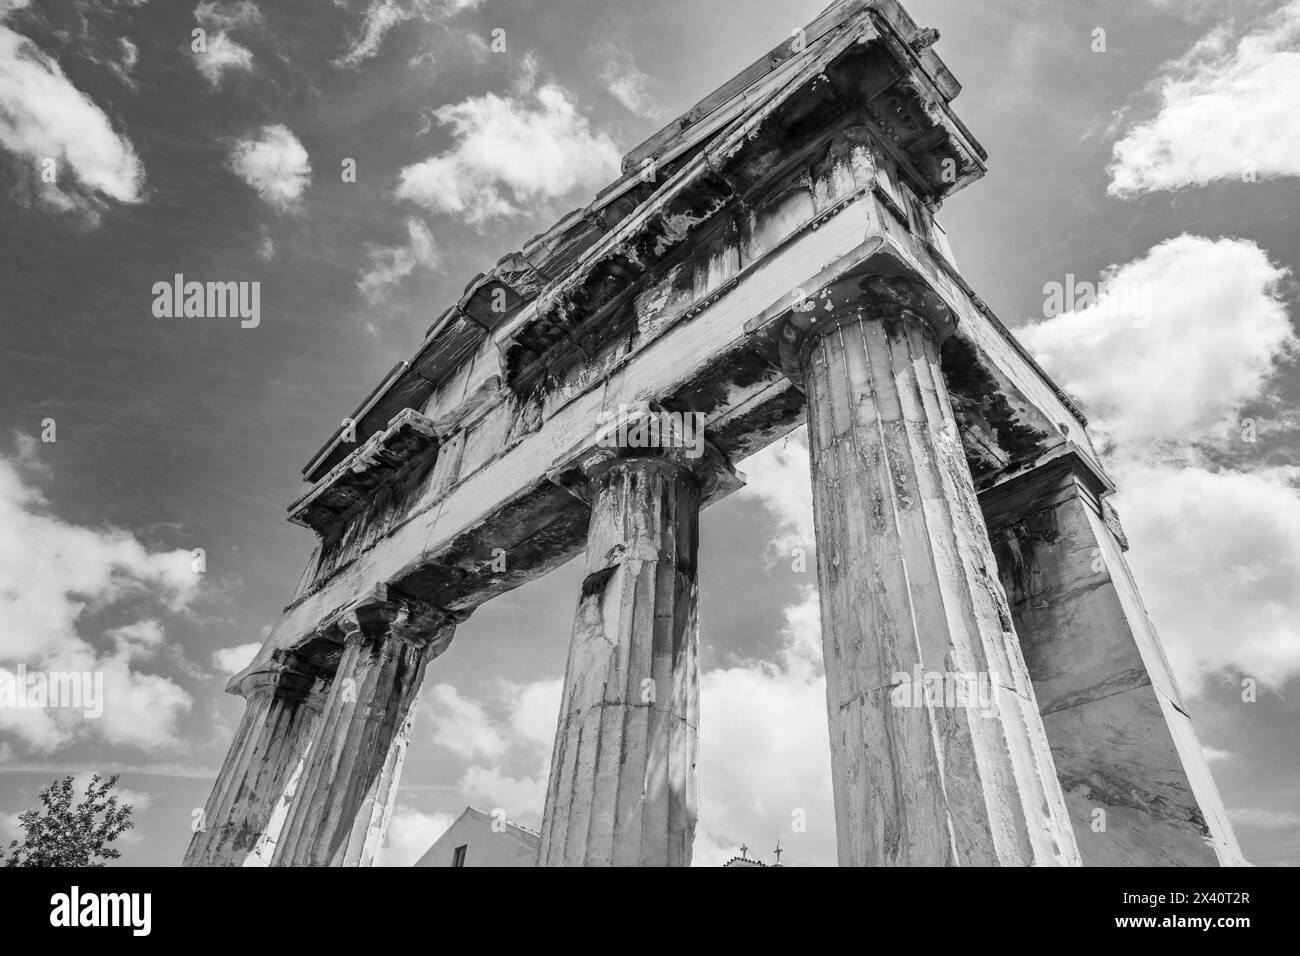 La porte d'Athéna Archegetis à l'Agora romaine, un site archéologique à Athènes, Grèce ; Athènes, Grèce Banque D'Images